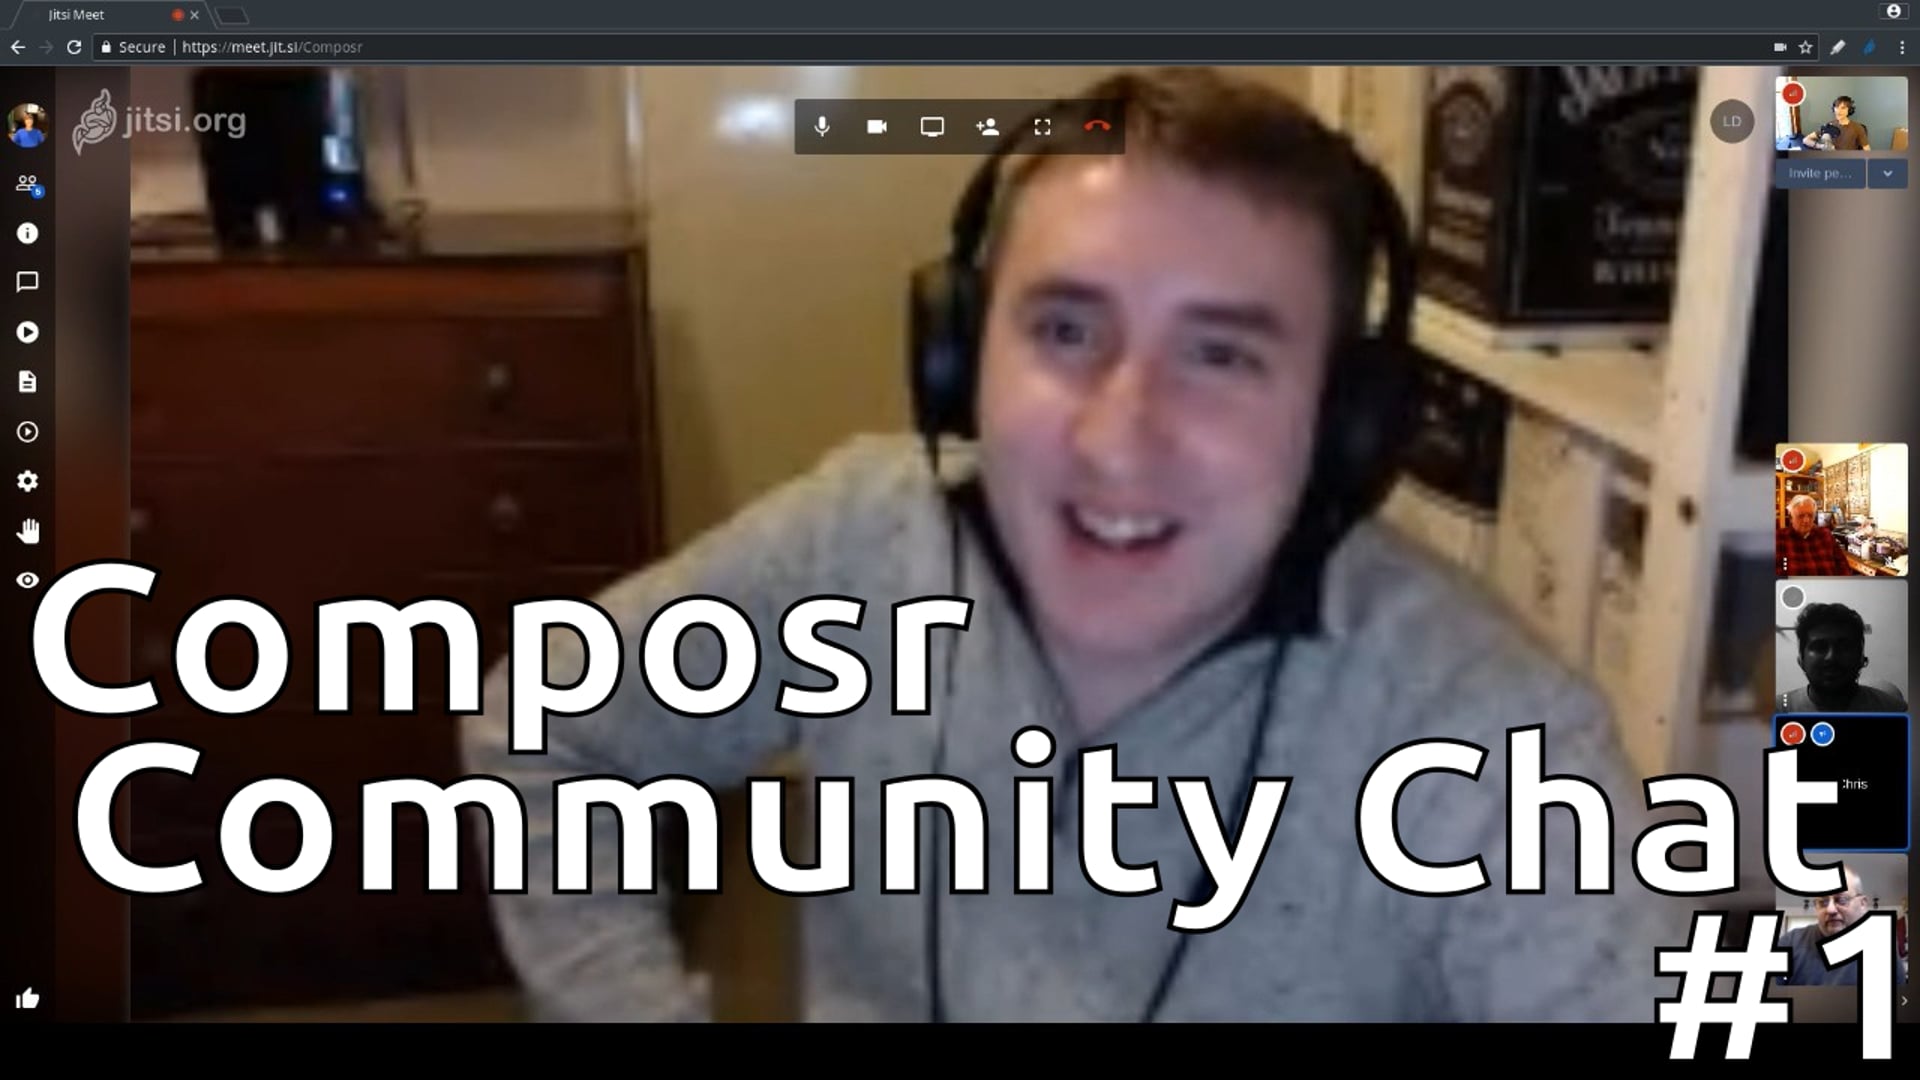 Composr Community Chat #1